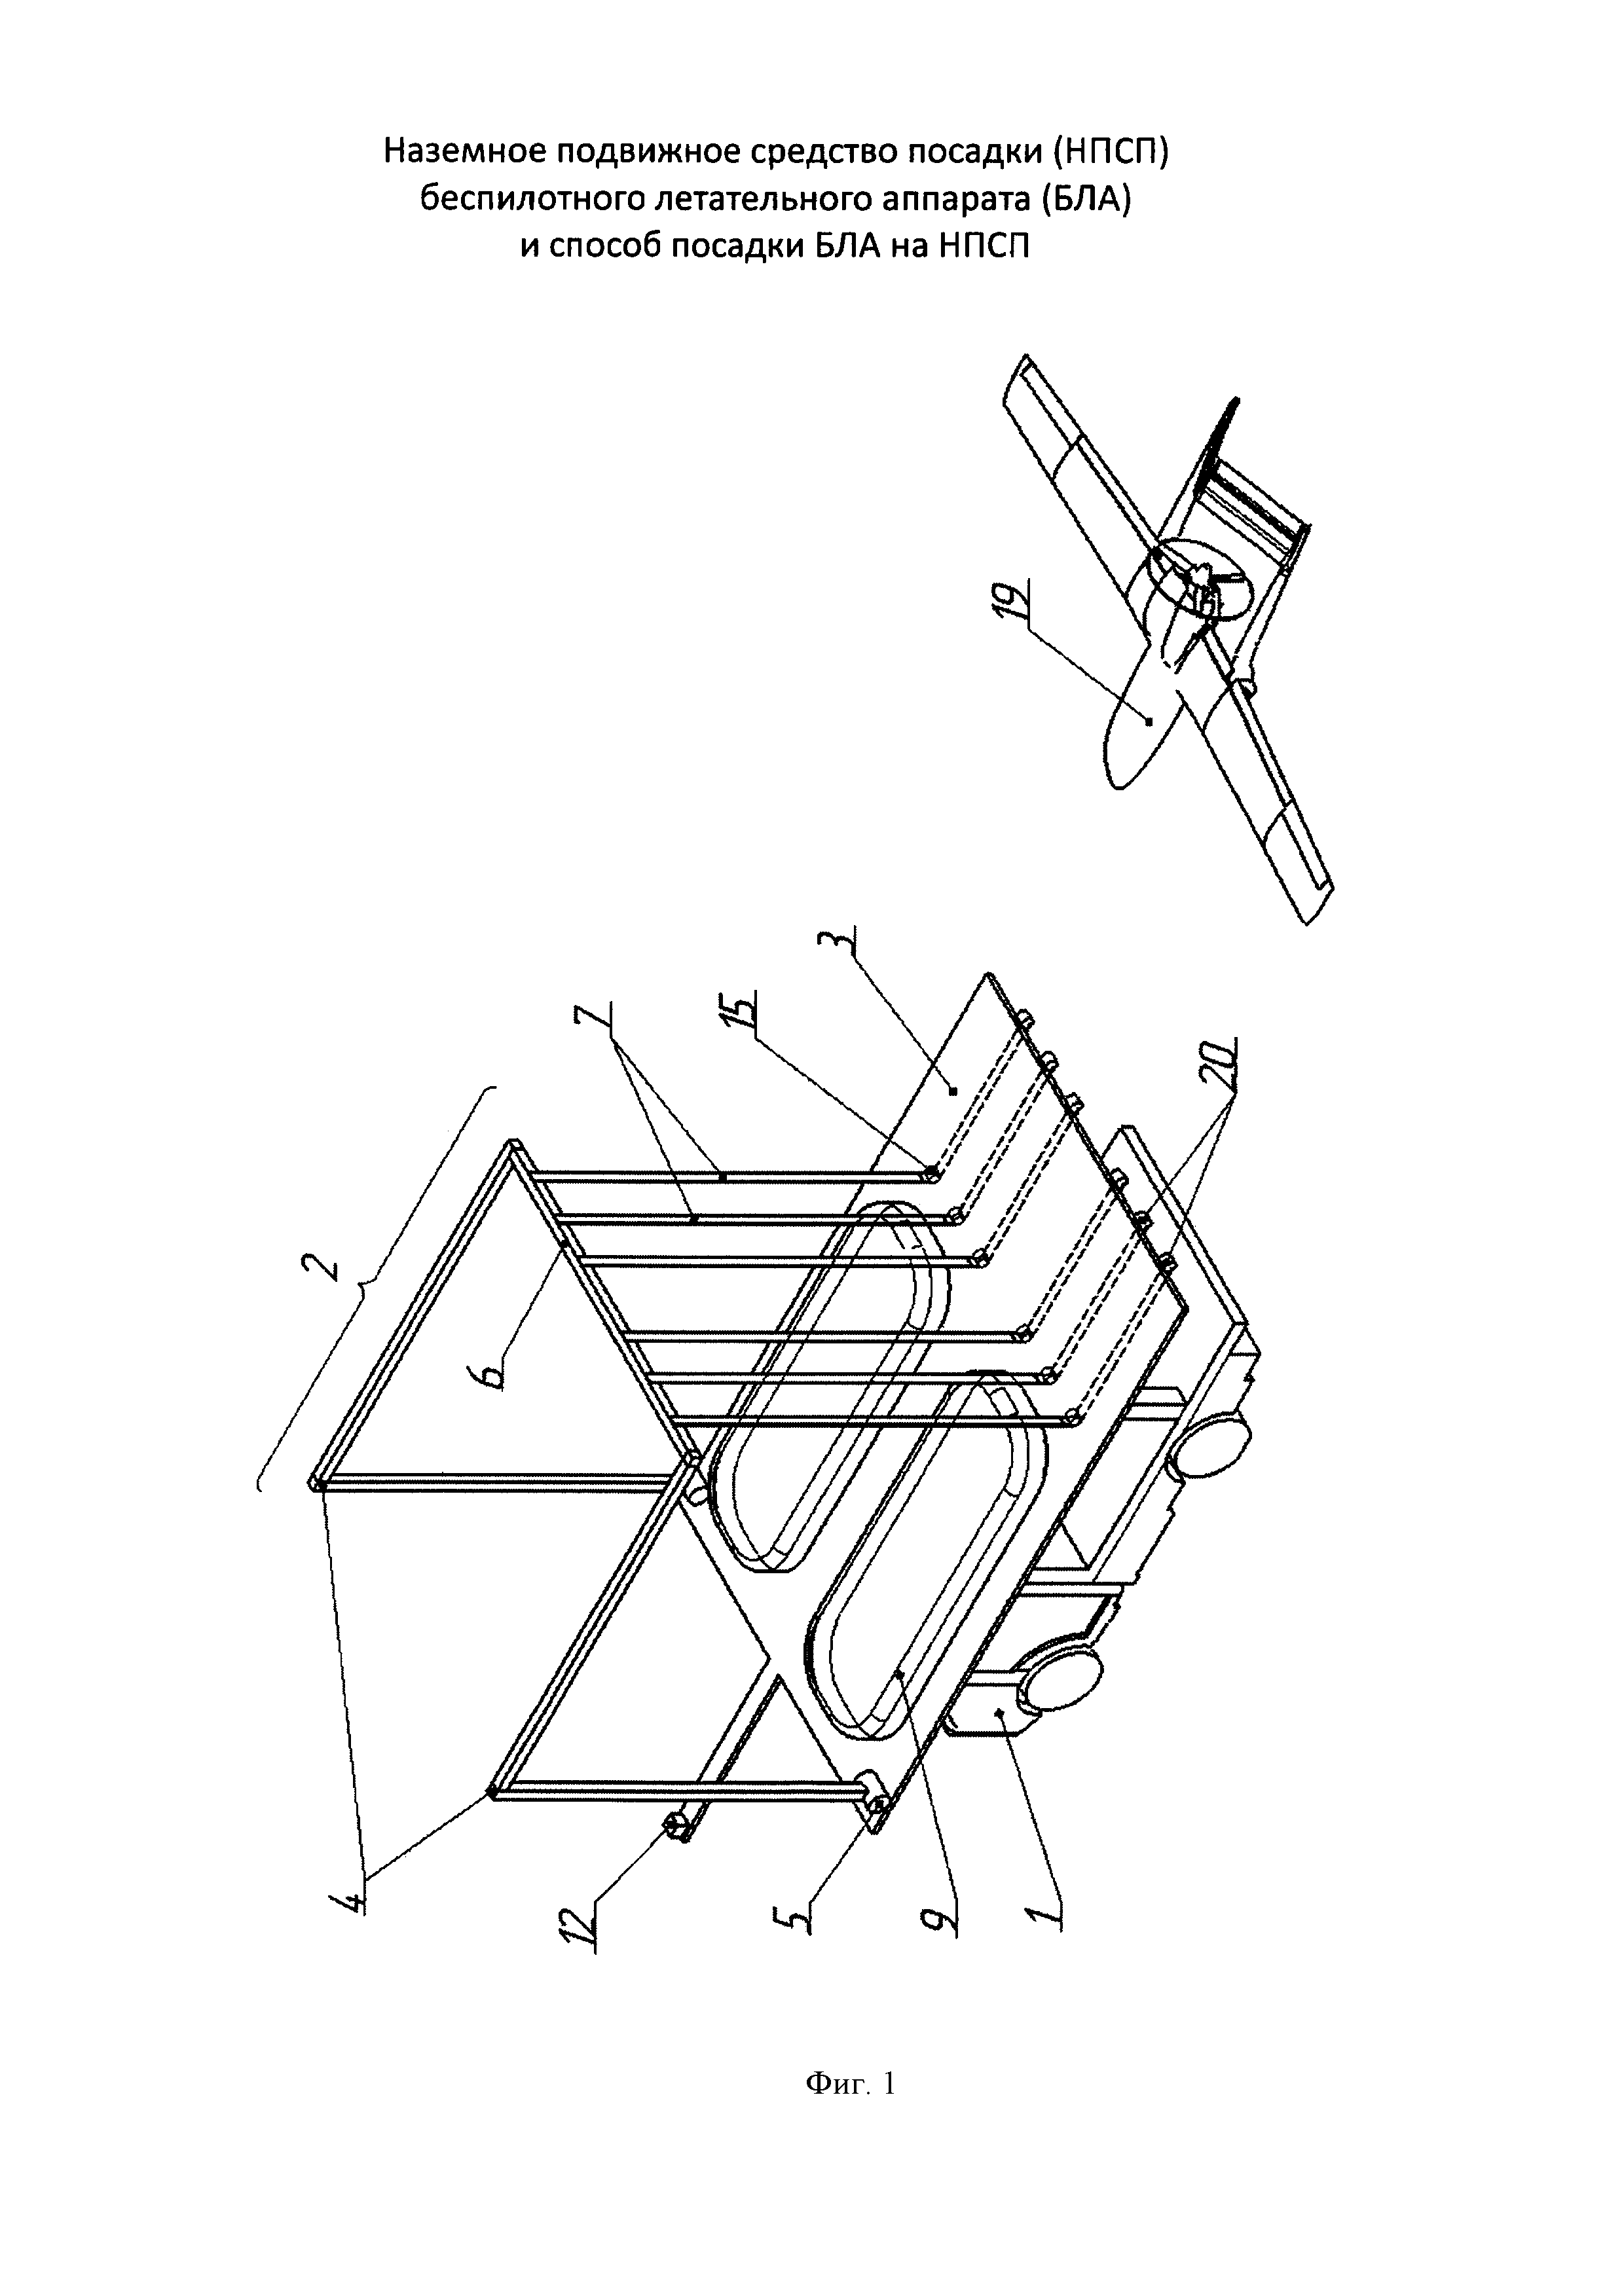 Наземное подвижное средство посадки (НПСП) беспилотного летательного аппарата (БЛА) и способ посадки БЛА на НПСП